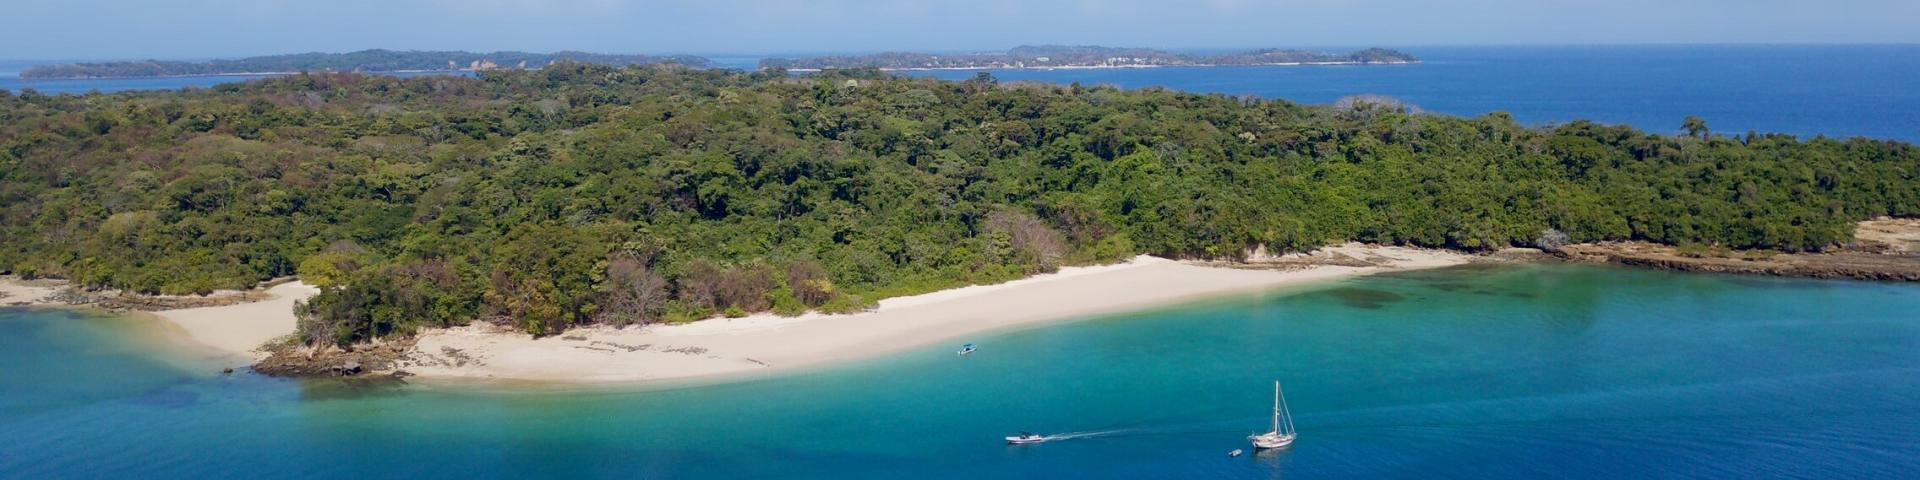 Wyspa Contadora (Isla Contadora) – Panama z Memories Vacations